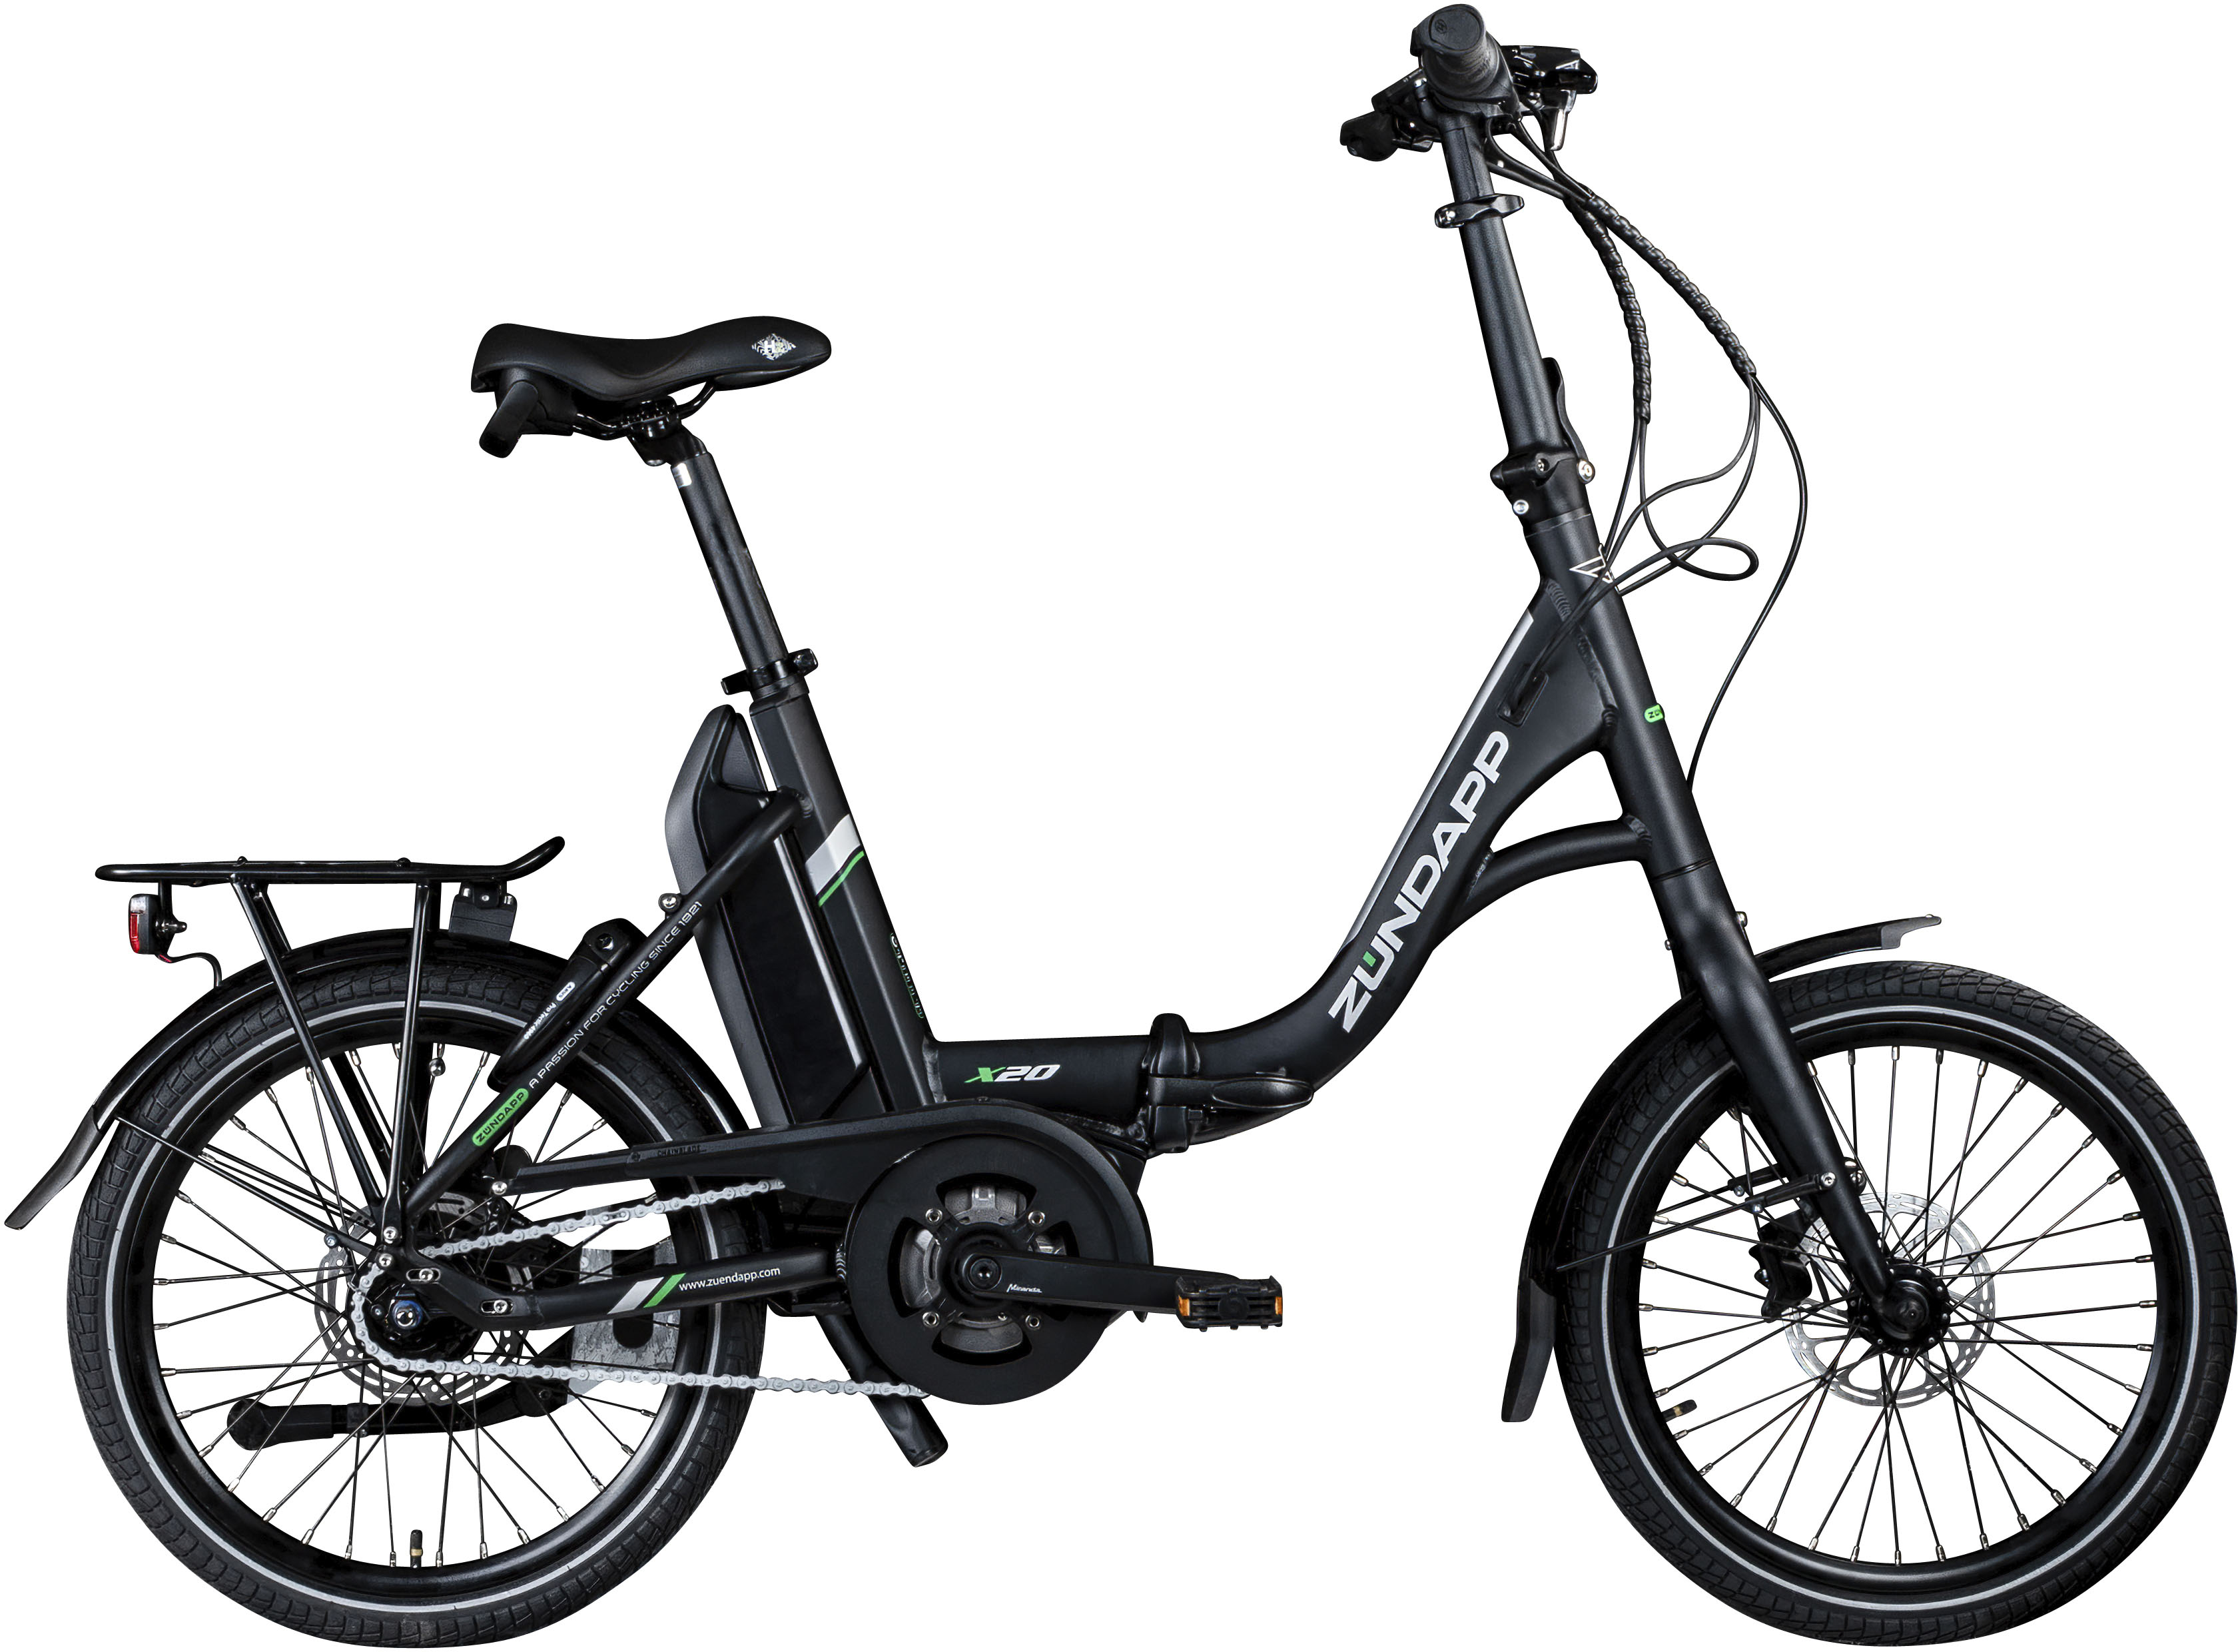 ZÜNDAPP X20 E Bike 20 Zoll Klapprad für Damen und Herren 150-190 cm Bosch Ebike Mittelmotor mit Shimano Nexus 7 Gang Nabenschaltung Elektro Fahrrad 400 Wh Akku Faltrad (45 cm, schwarz/grün)